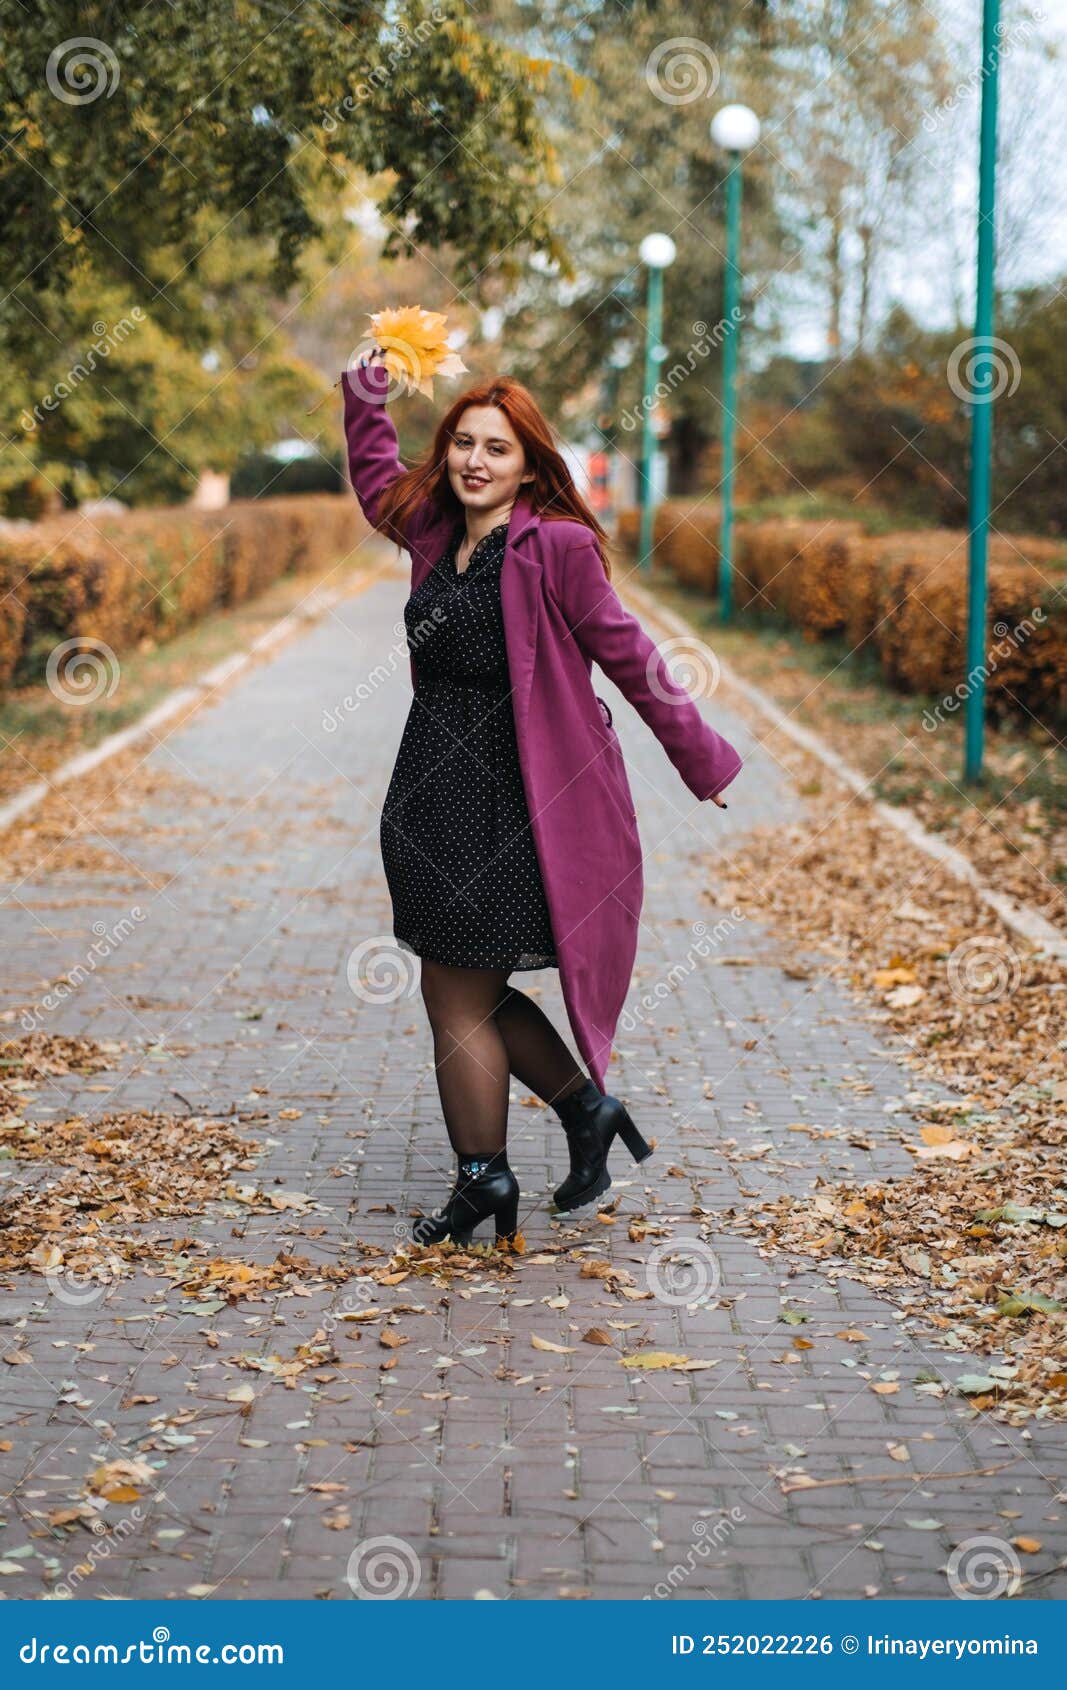 Retrato Al Aire Libre De Otoño De Feliz Sonriente Más Mujer De Pelo Rojo Tamaño En Abrigo Caminando En El Parque Otoño. Foto de archivo - Imagen de ropas: 252022226